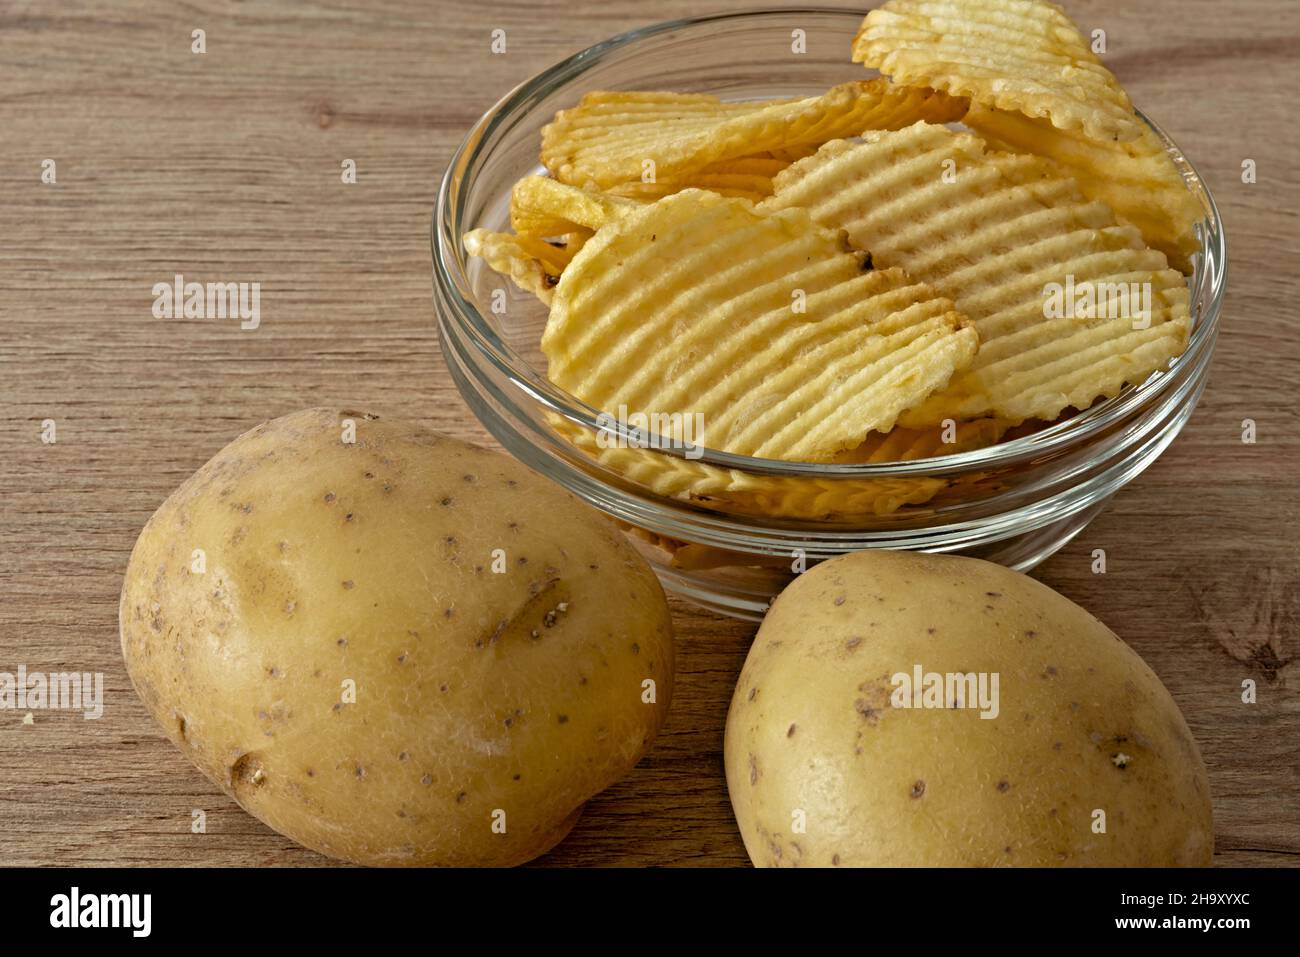 patate - patate fritte nella ciotola di vetro primo piano vista da sopra con patate fresche Banque D'Images